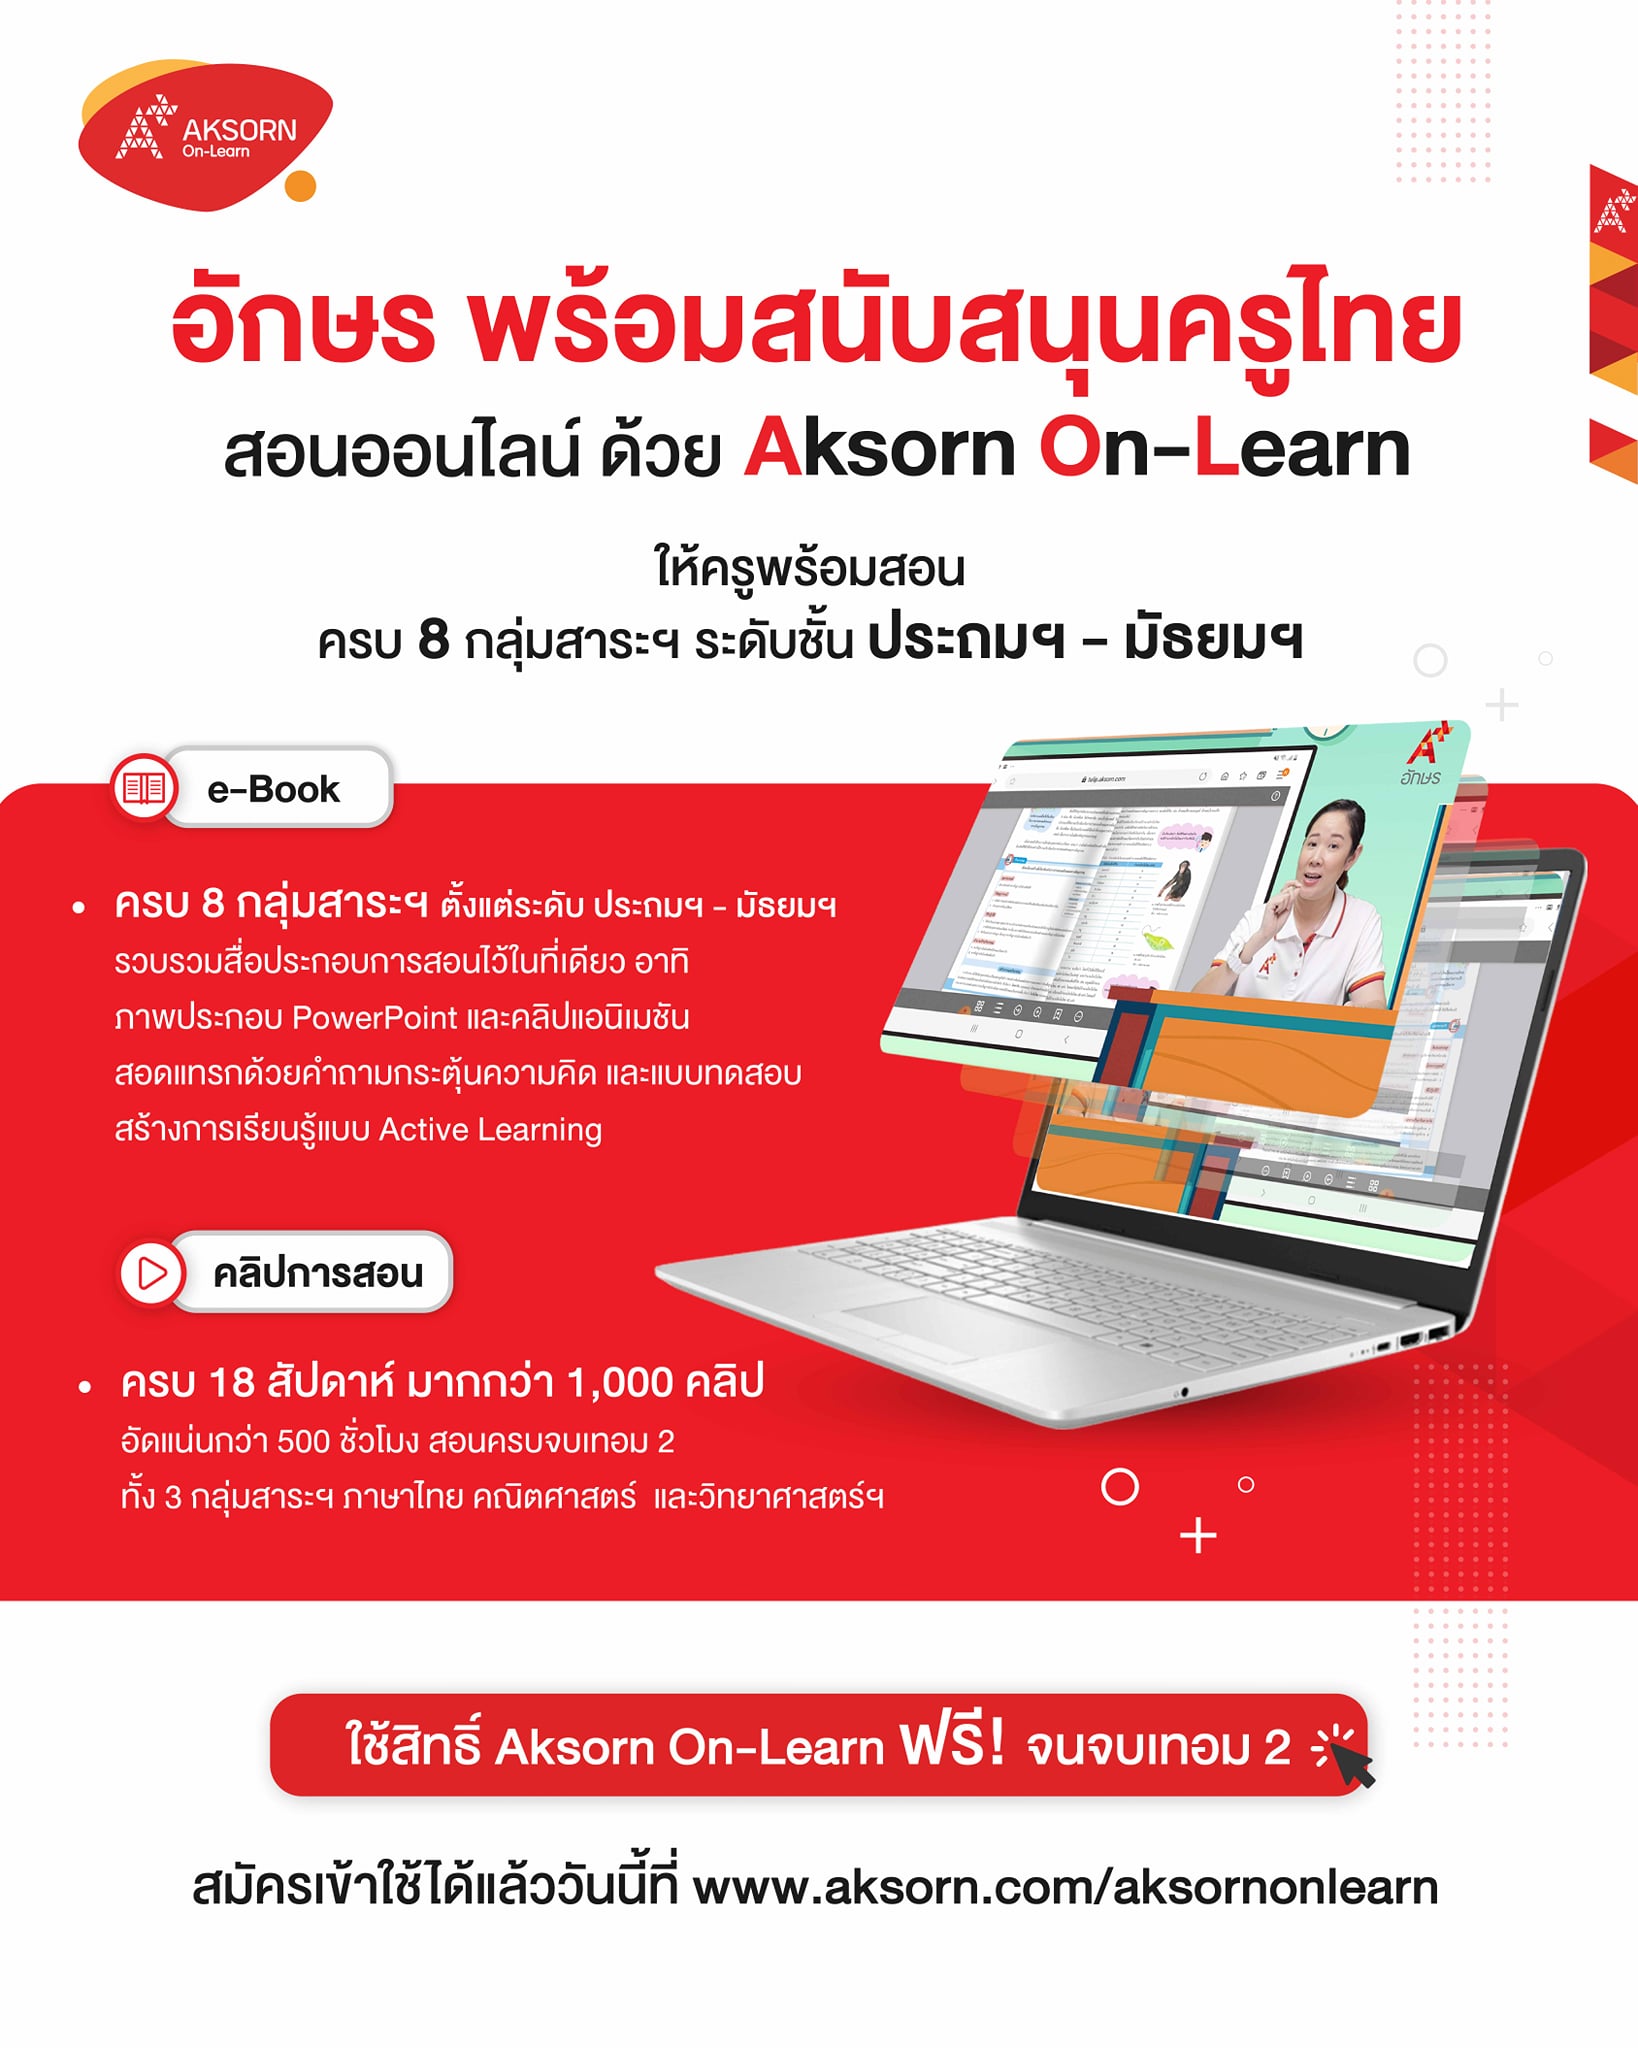 แนะนำระบบการสอนออนไลน์ฟรี!! Aksorn On-Learn ให้ทุกการเรียนไม่สะดุด ครบทั้ง 8 กลุ่มสาระฯ ทุกระดับชั้น